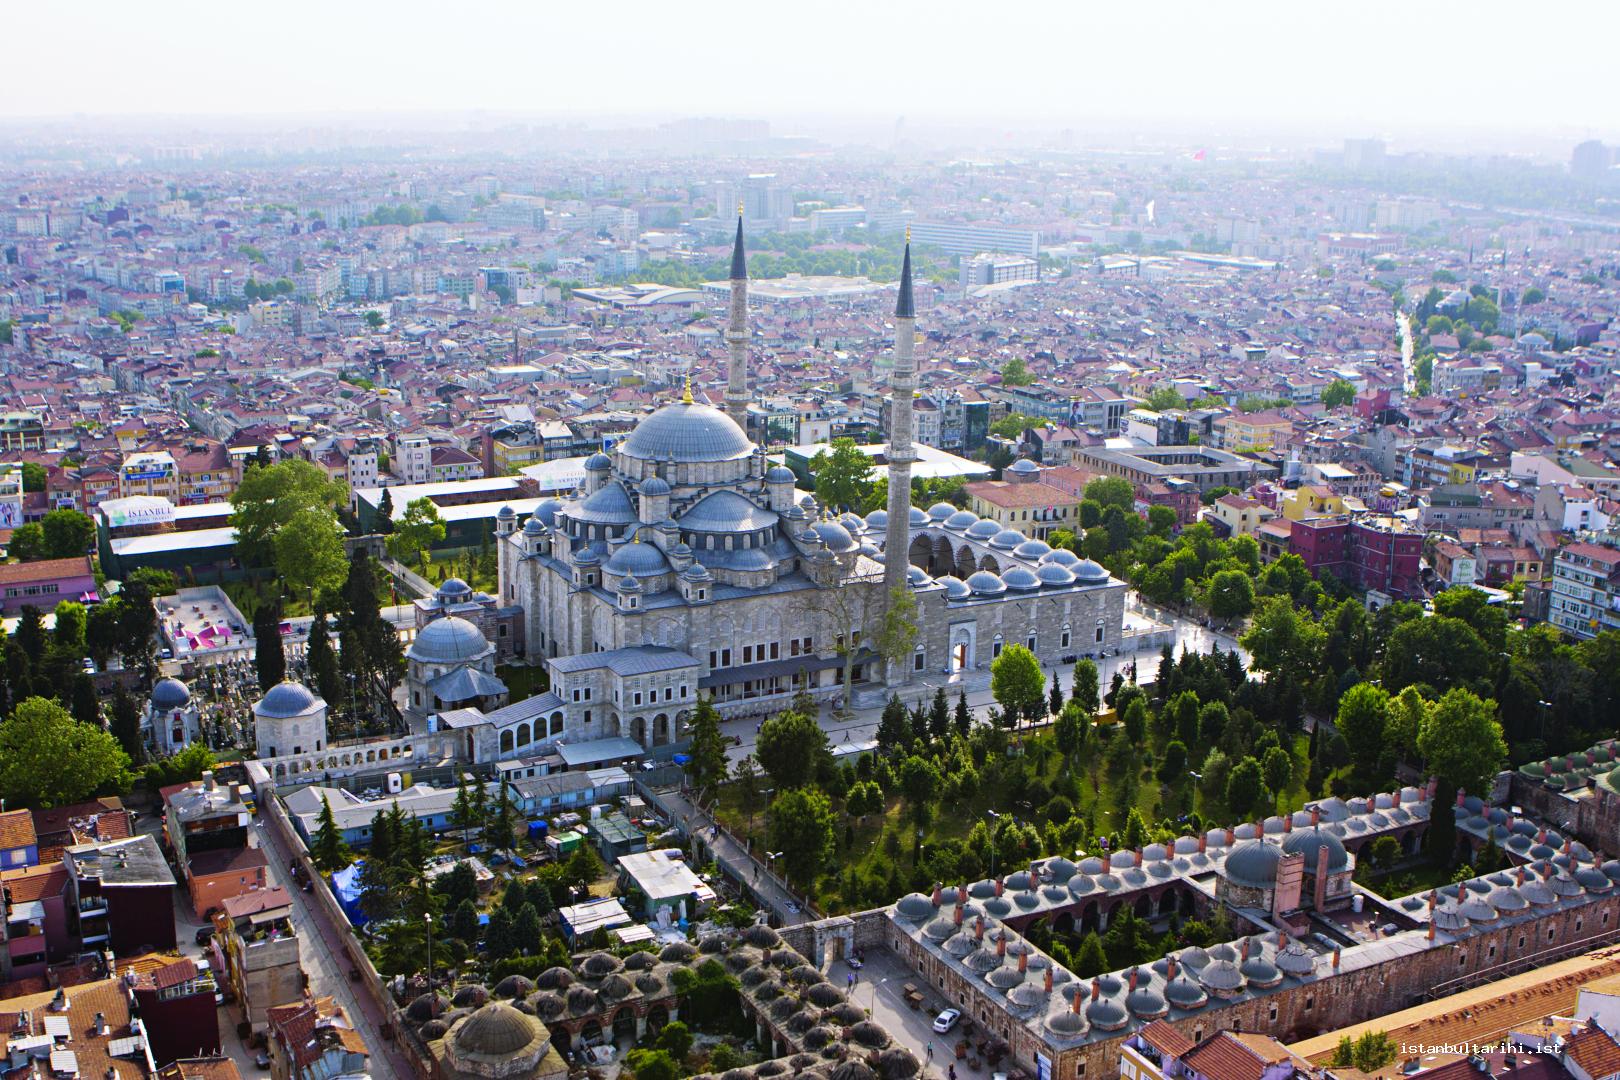 3- Fatih Complex, Mosque, and madrasas